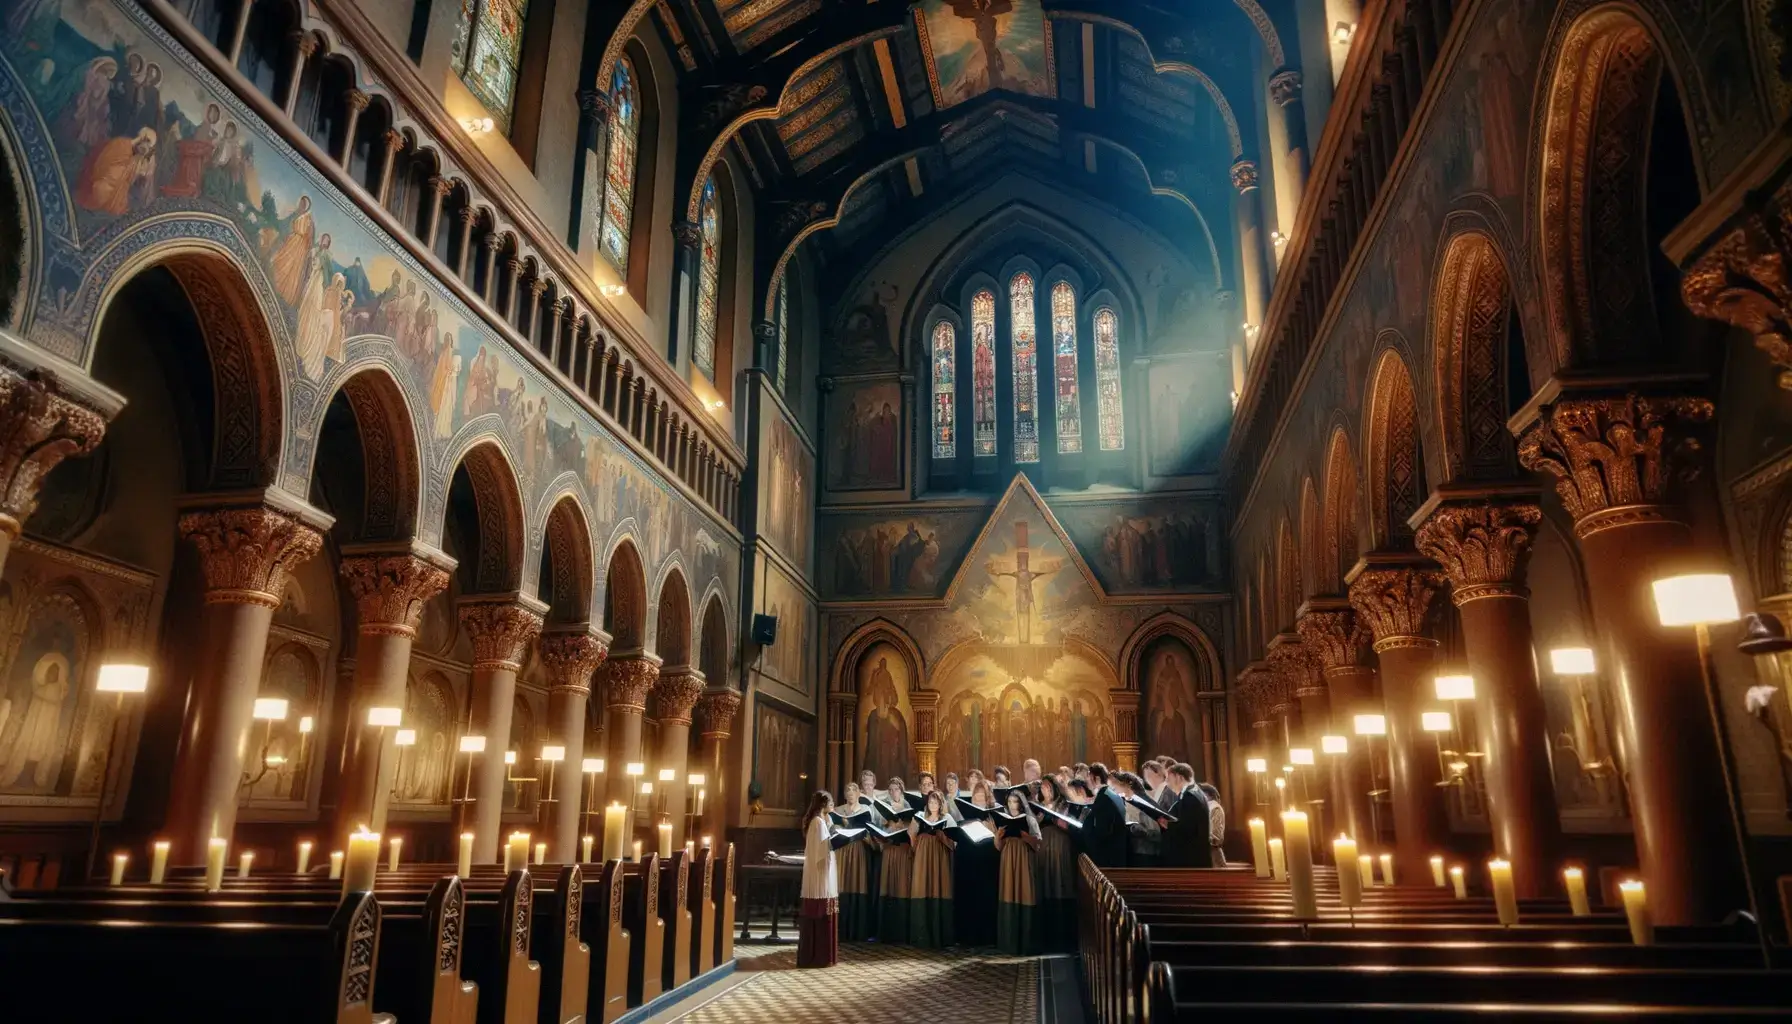 Interior de igreja com coral cantando músicas gospel iluminados por luz ambiente